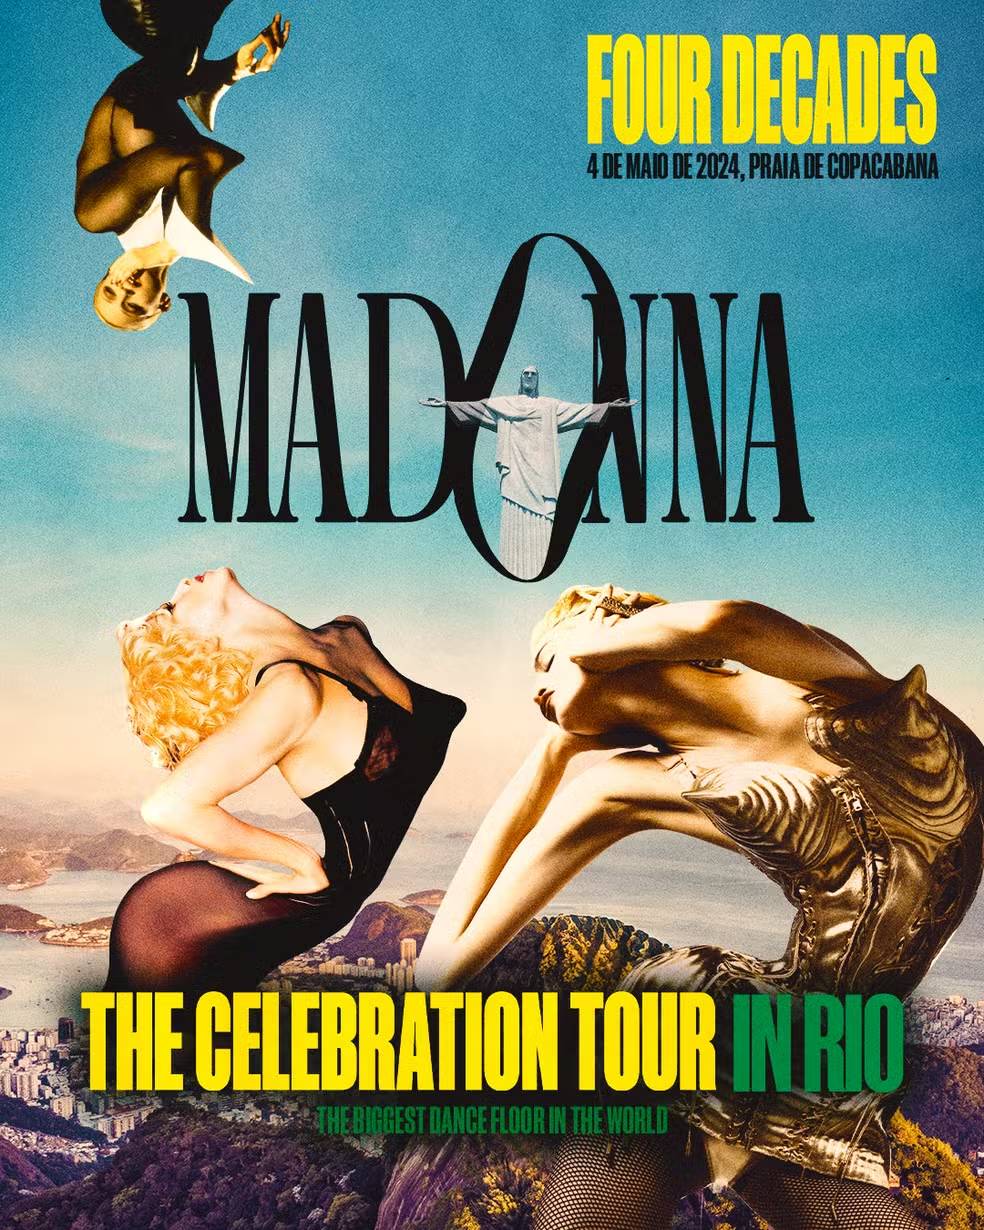 el anuncio del show de Madonna en Copacabana